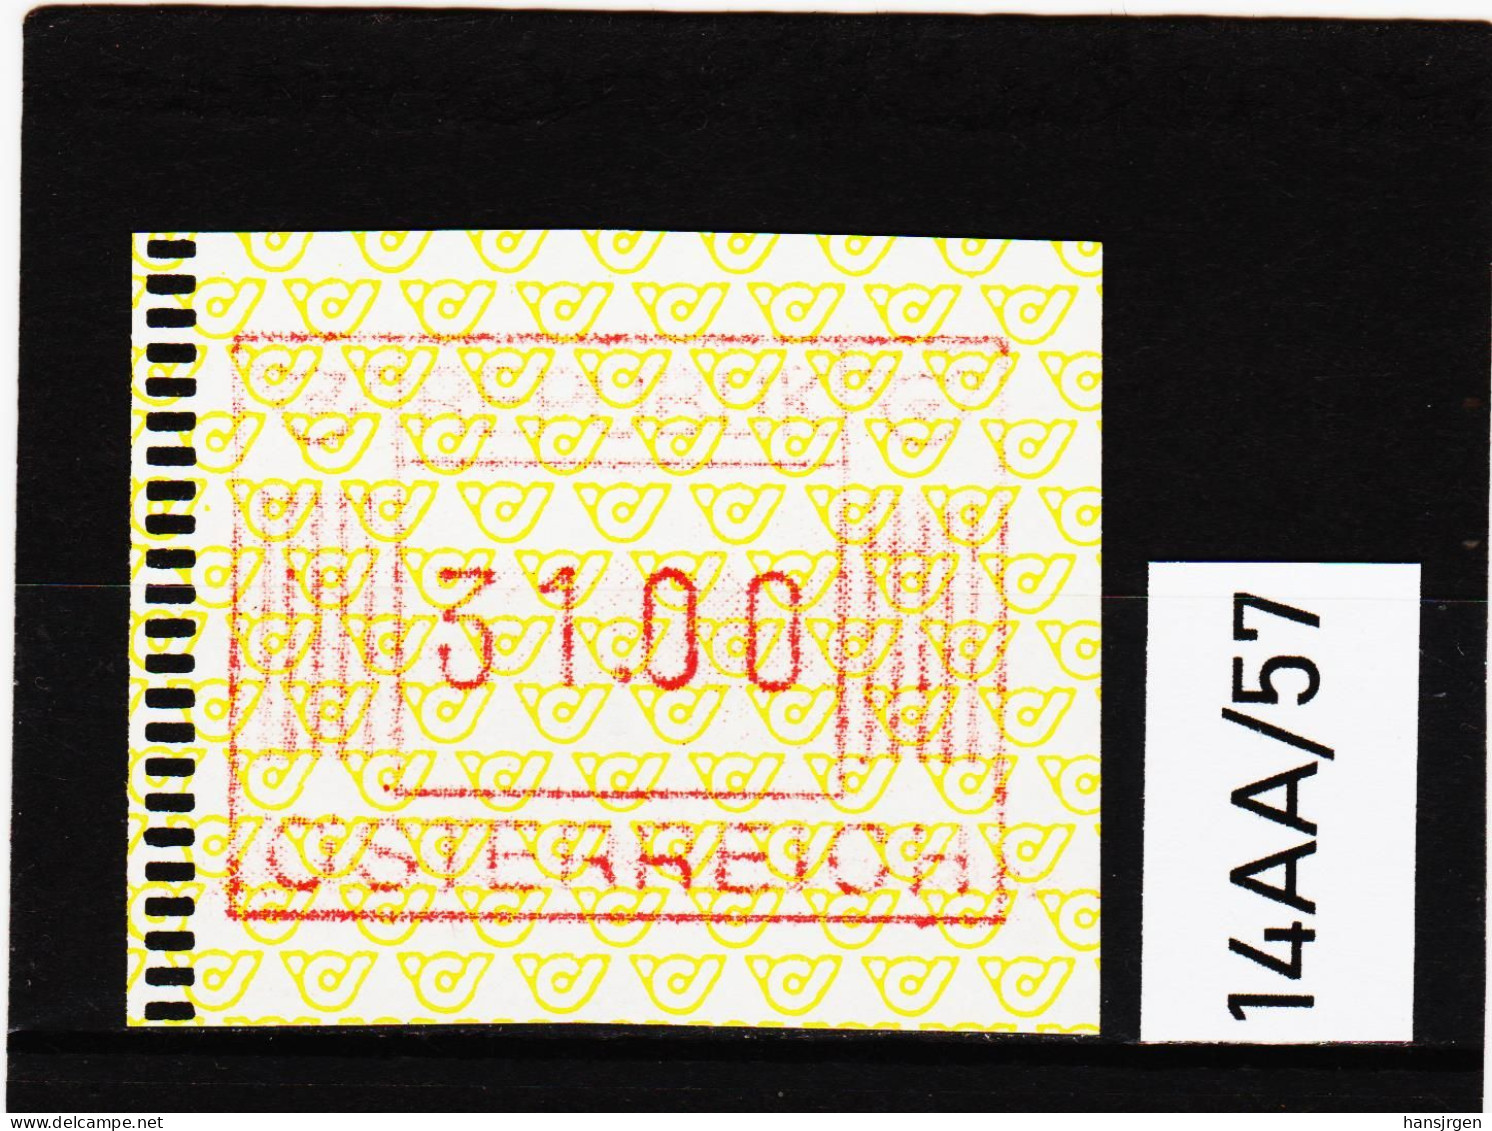 14AA/57  ÖSTERREICH 1983 AUTOMATENMARKEN 1. AUSGABE  31,00 SCHILLING   ** Postfrisch - Machine Labels [ATM]